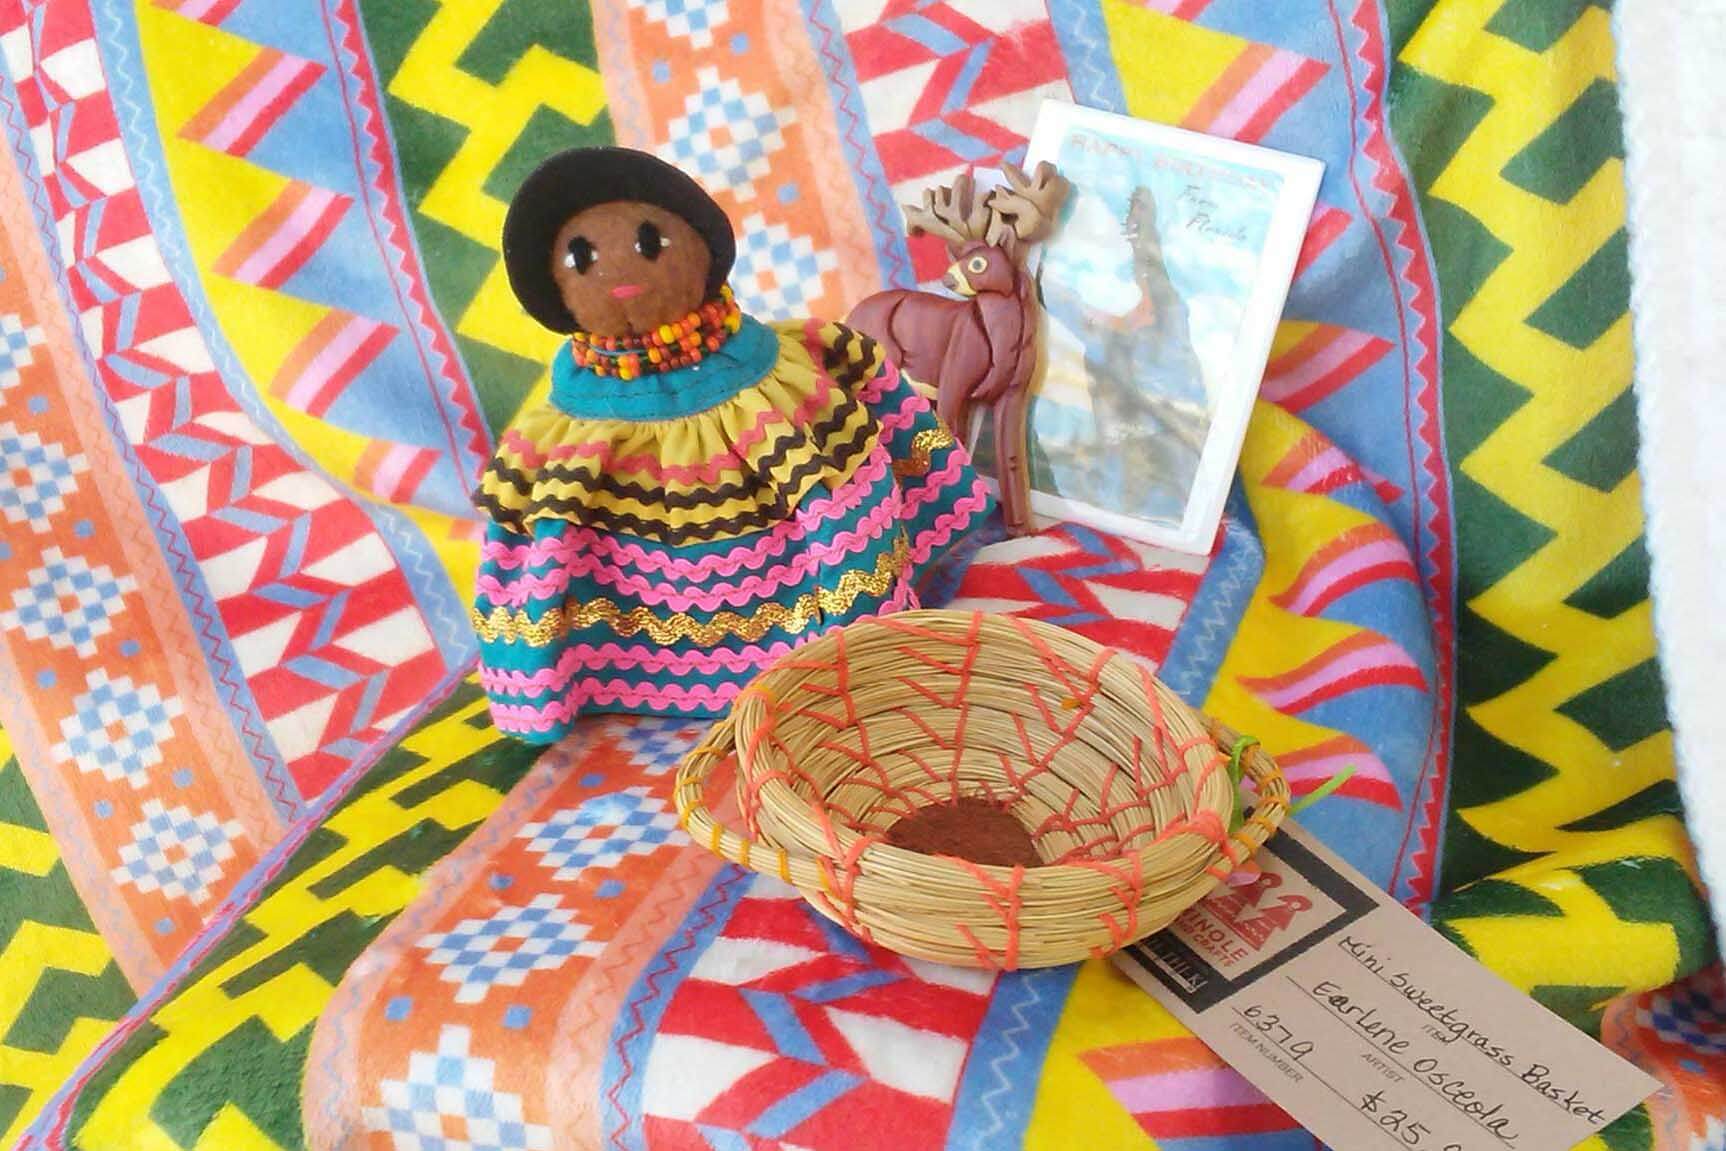 doll and basket in store at Ah-Tah-Thi-Ki Seminole Museum